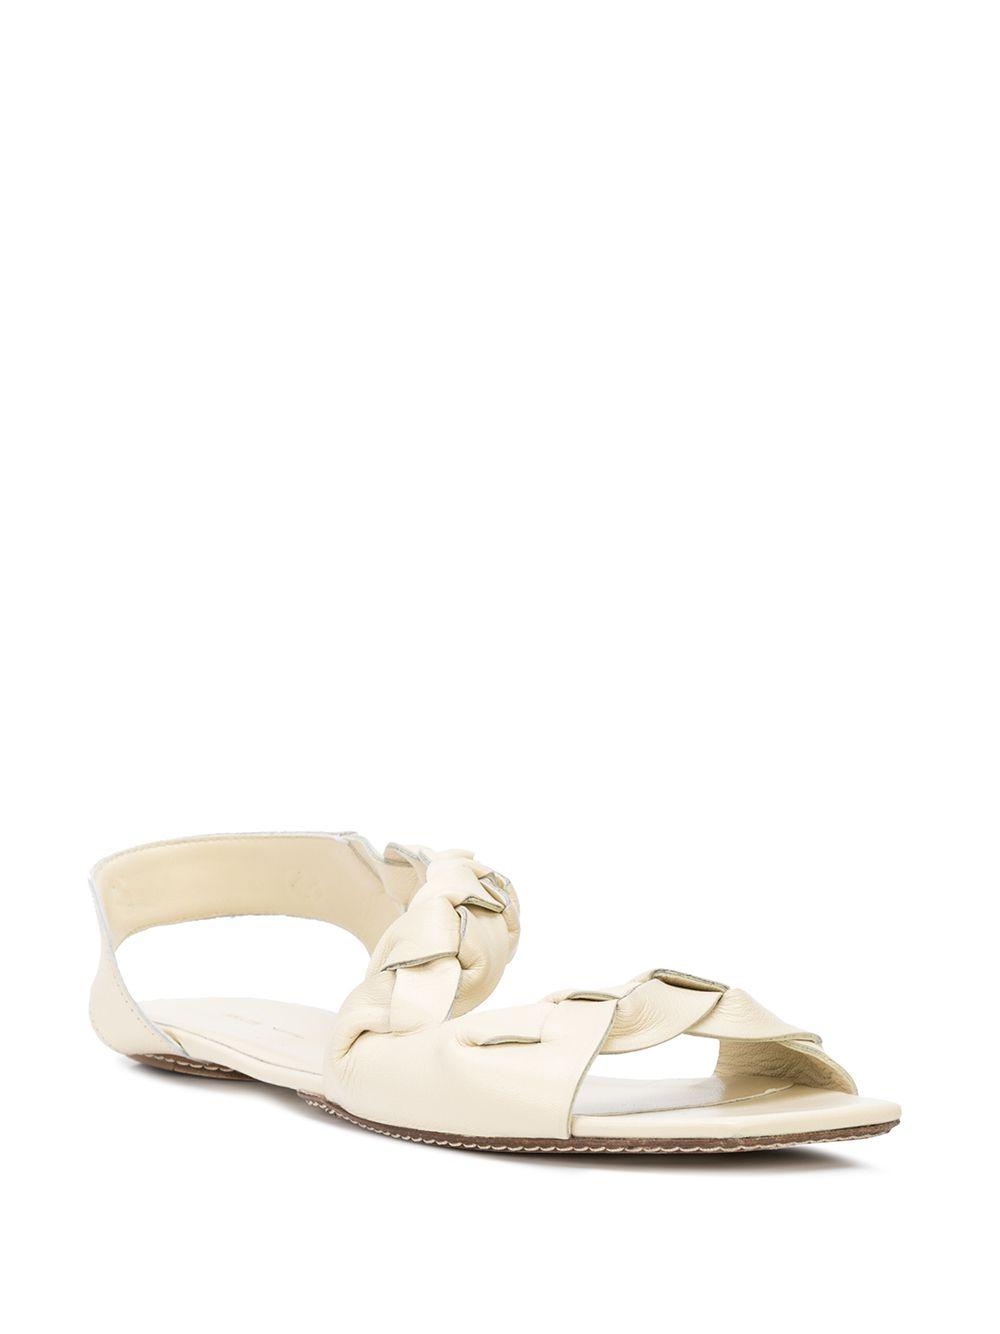 Khaite Torrance Open-toe Sandals in White - Lyst